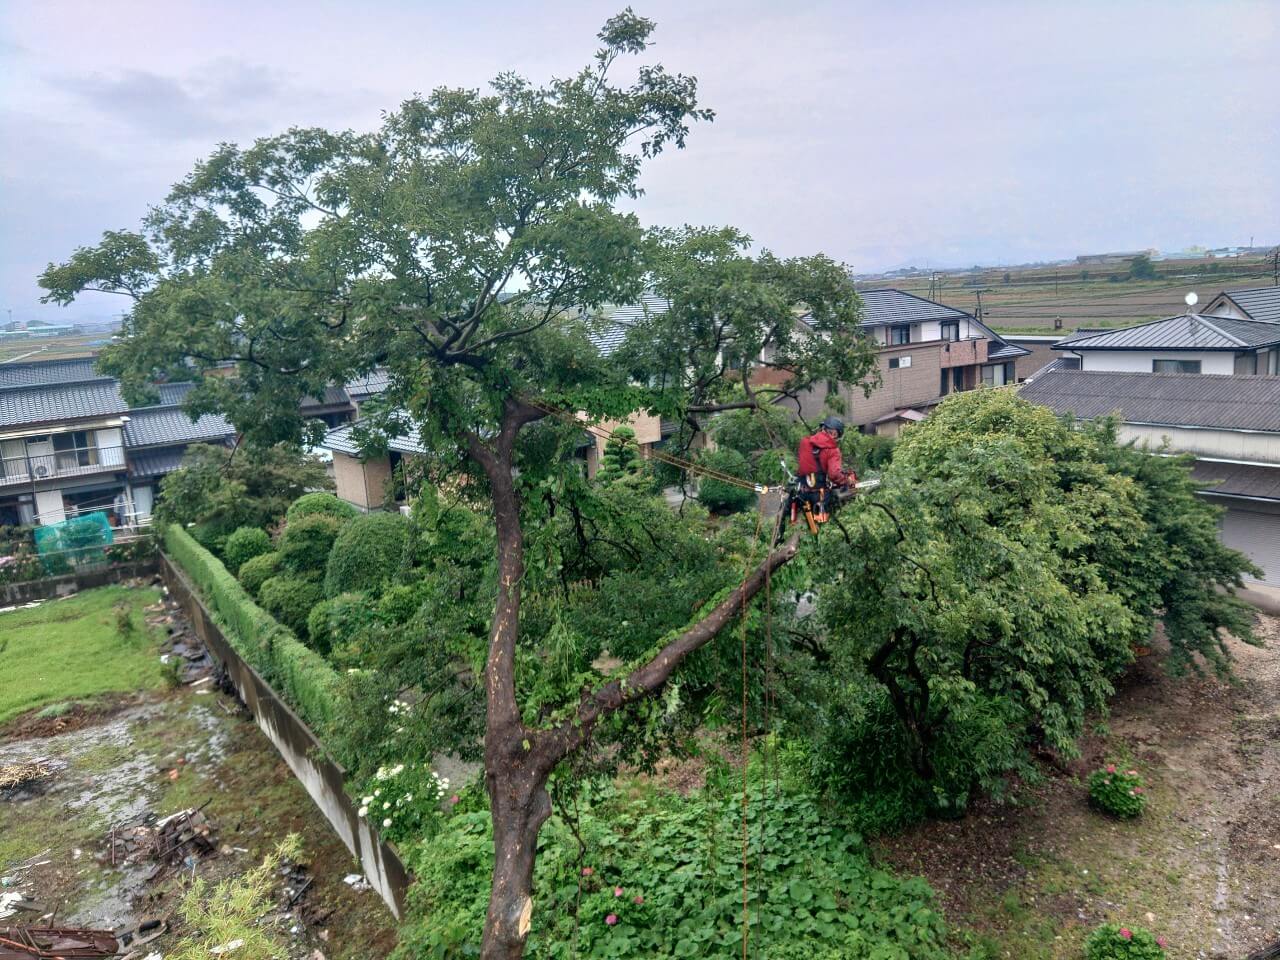 ミーティングを行った後それぞれ木に登り込んで作業を進めます。こちらは榎を担当するスタッフ杉山